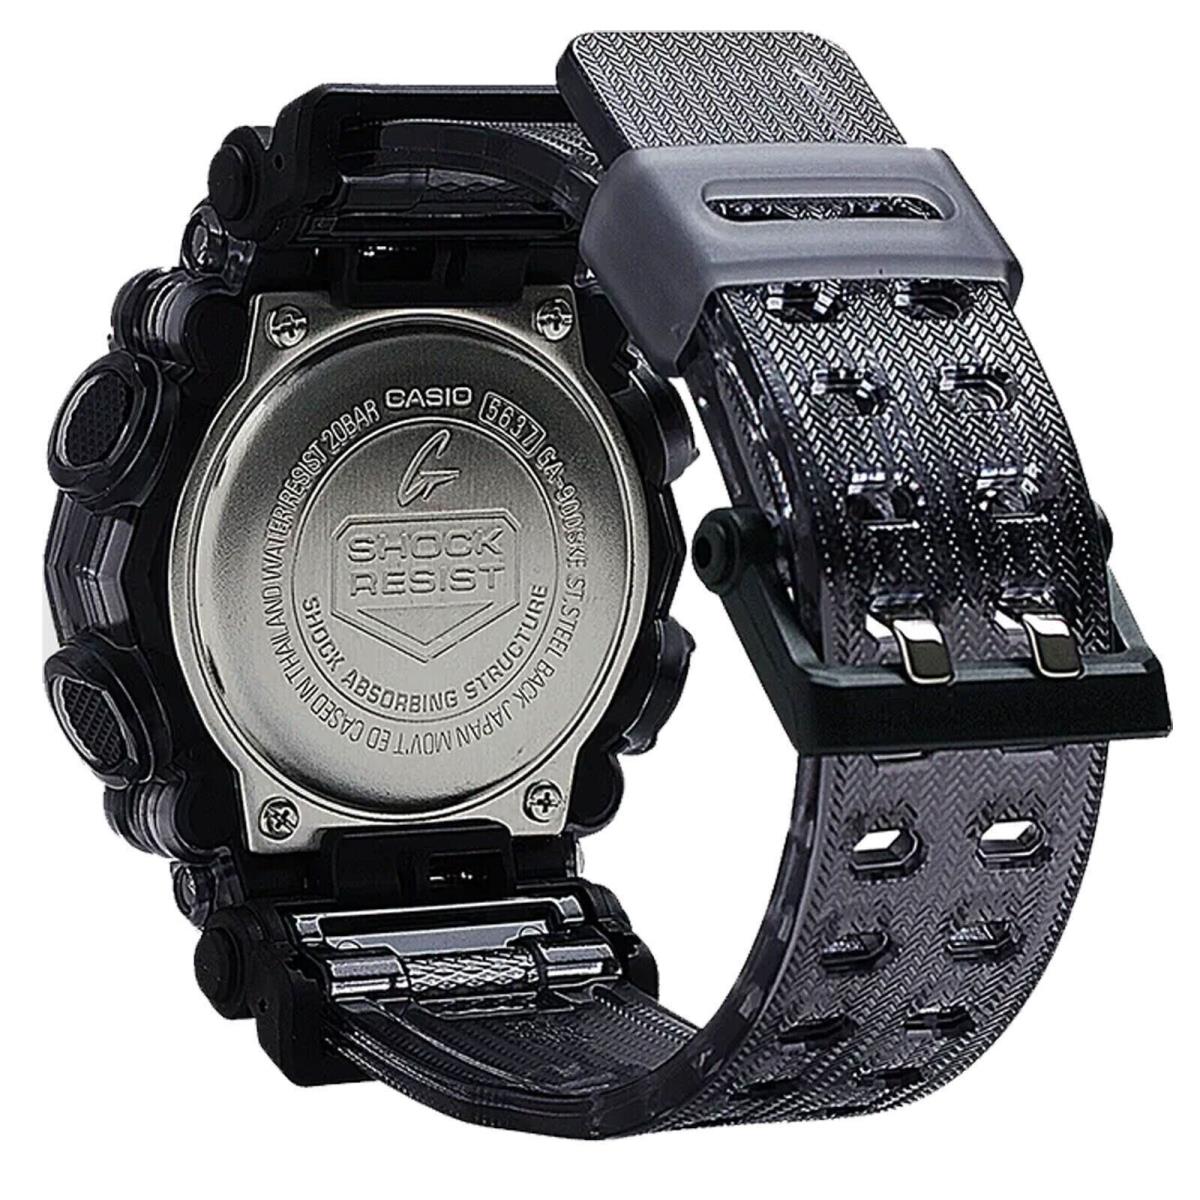 Casio G-shock Analog/digital Resin Watch GA110SKE-8A